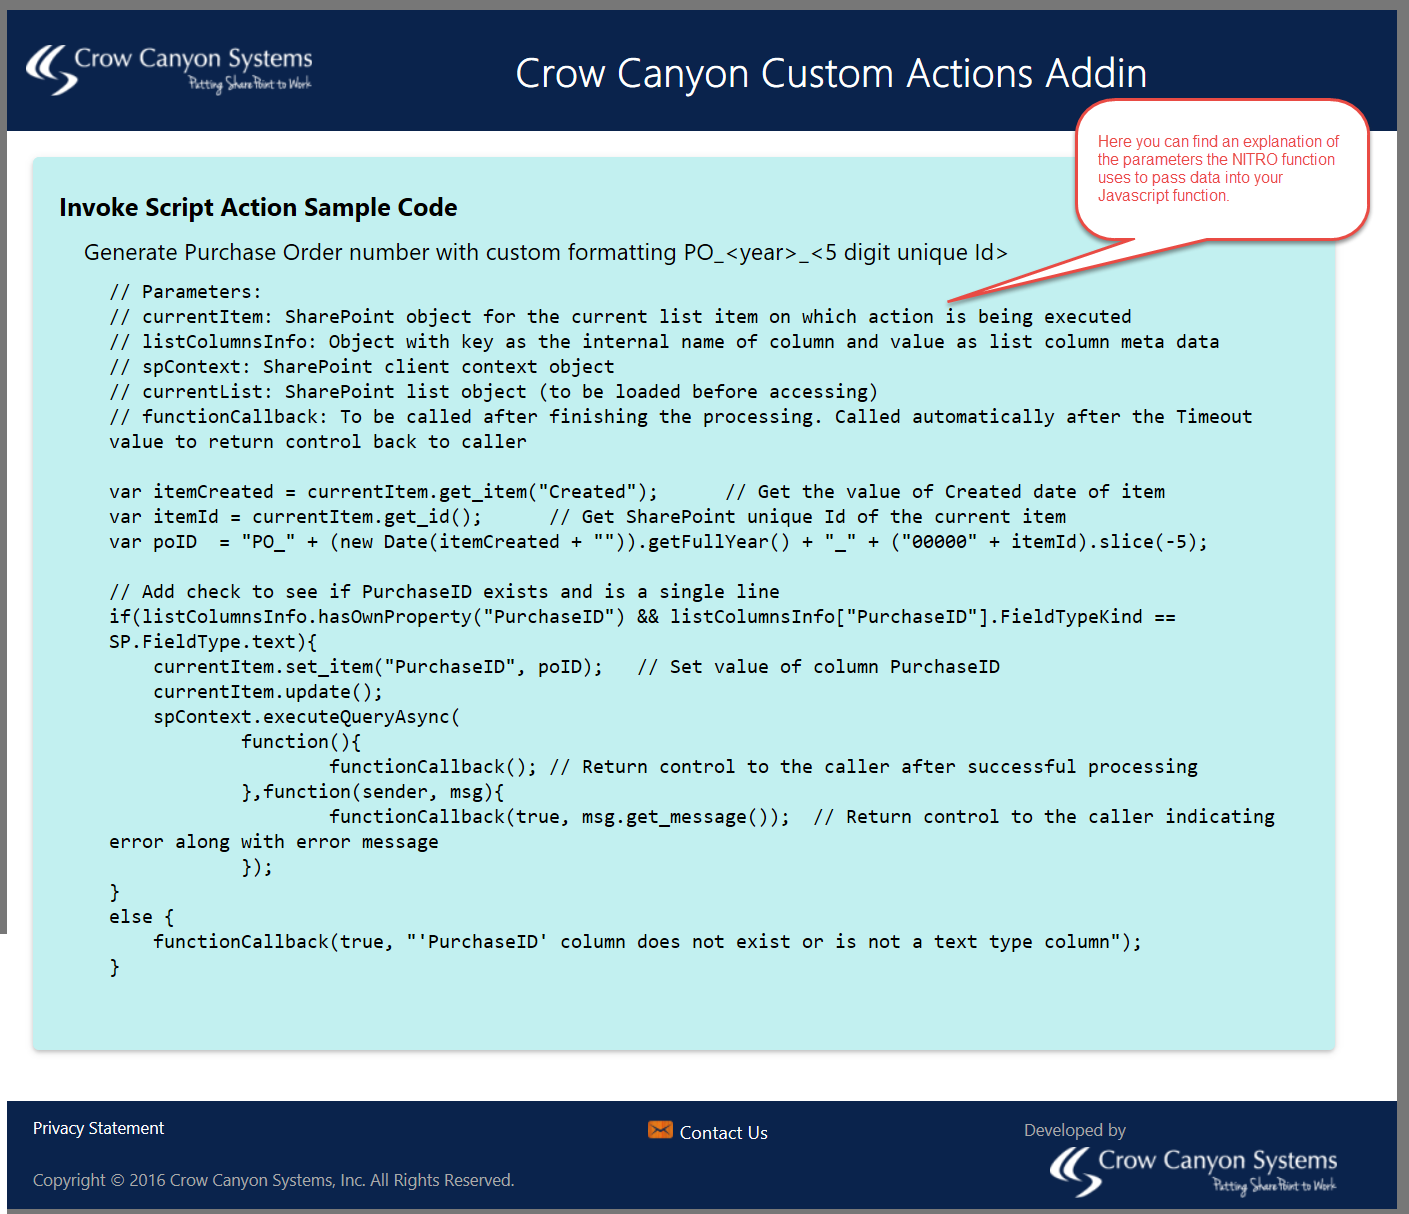 CustomAct - Execute Script2